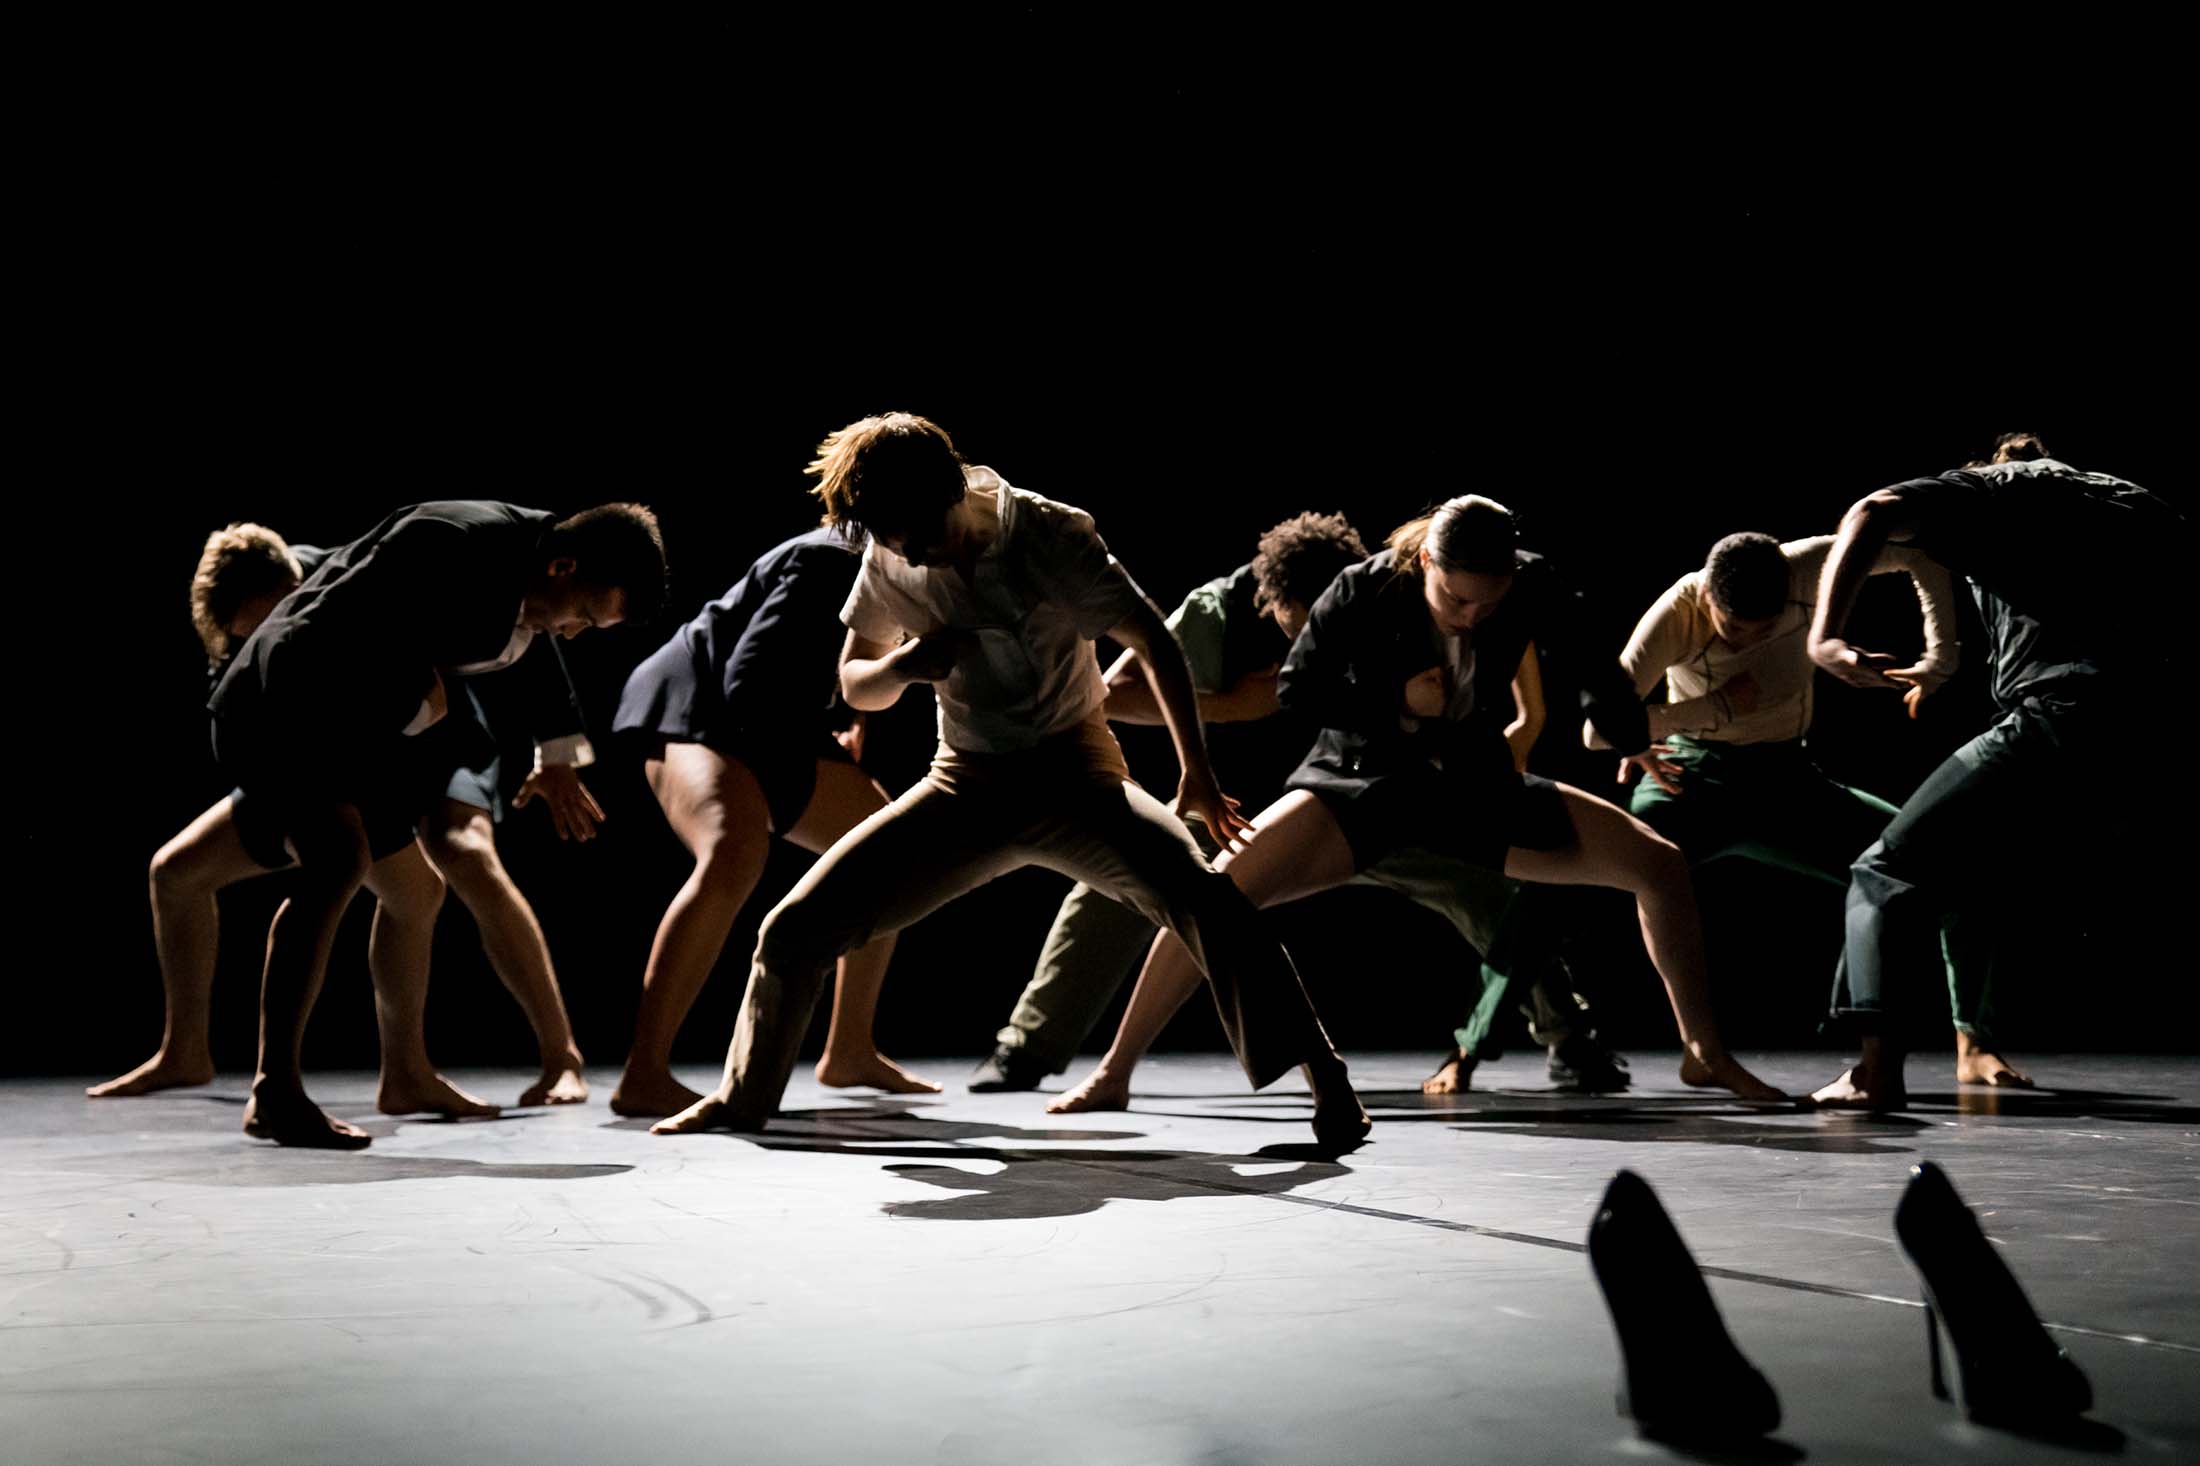 Tänzer:innen der Company MEK bei einer Aufführung von Faher Politics